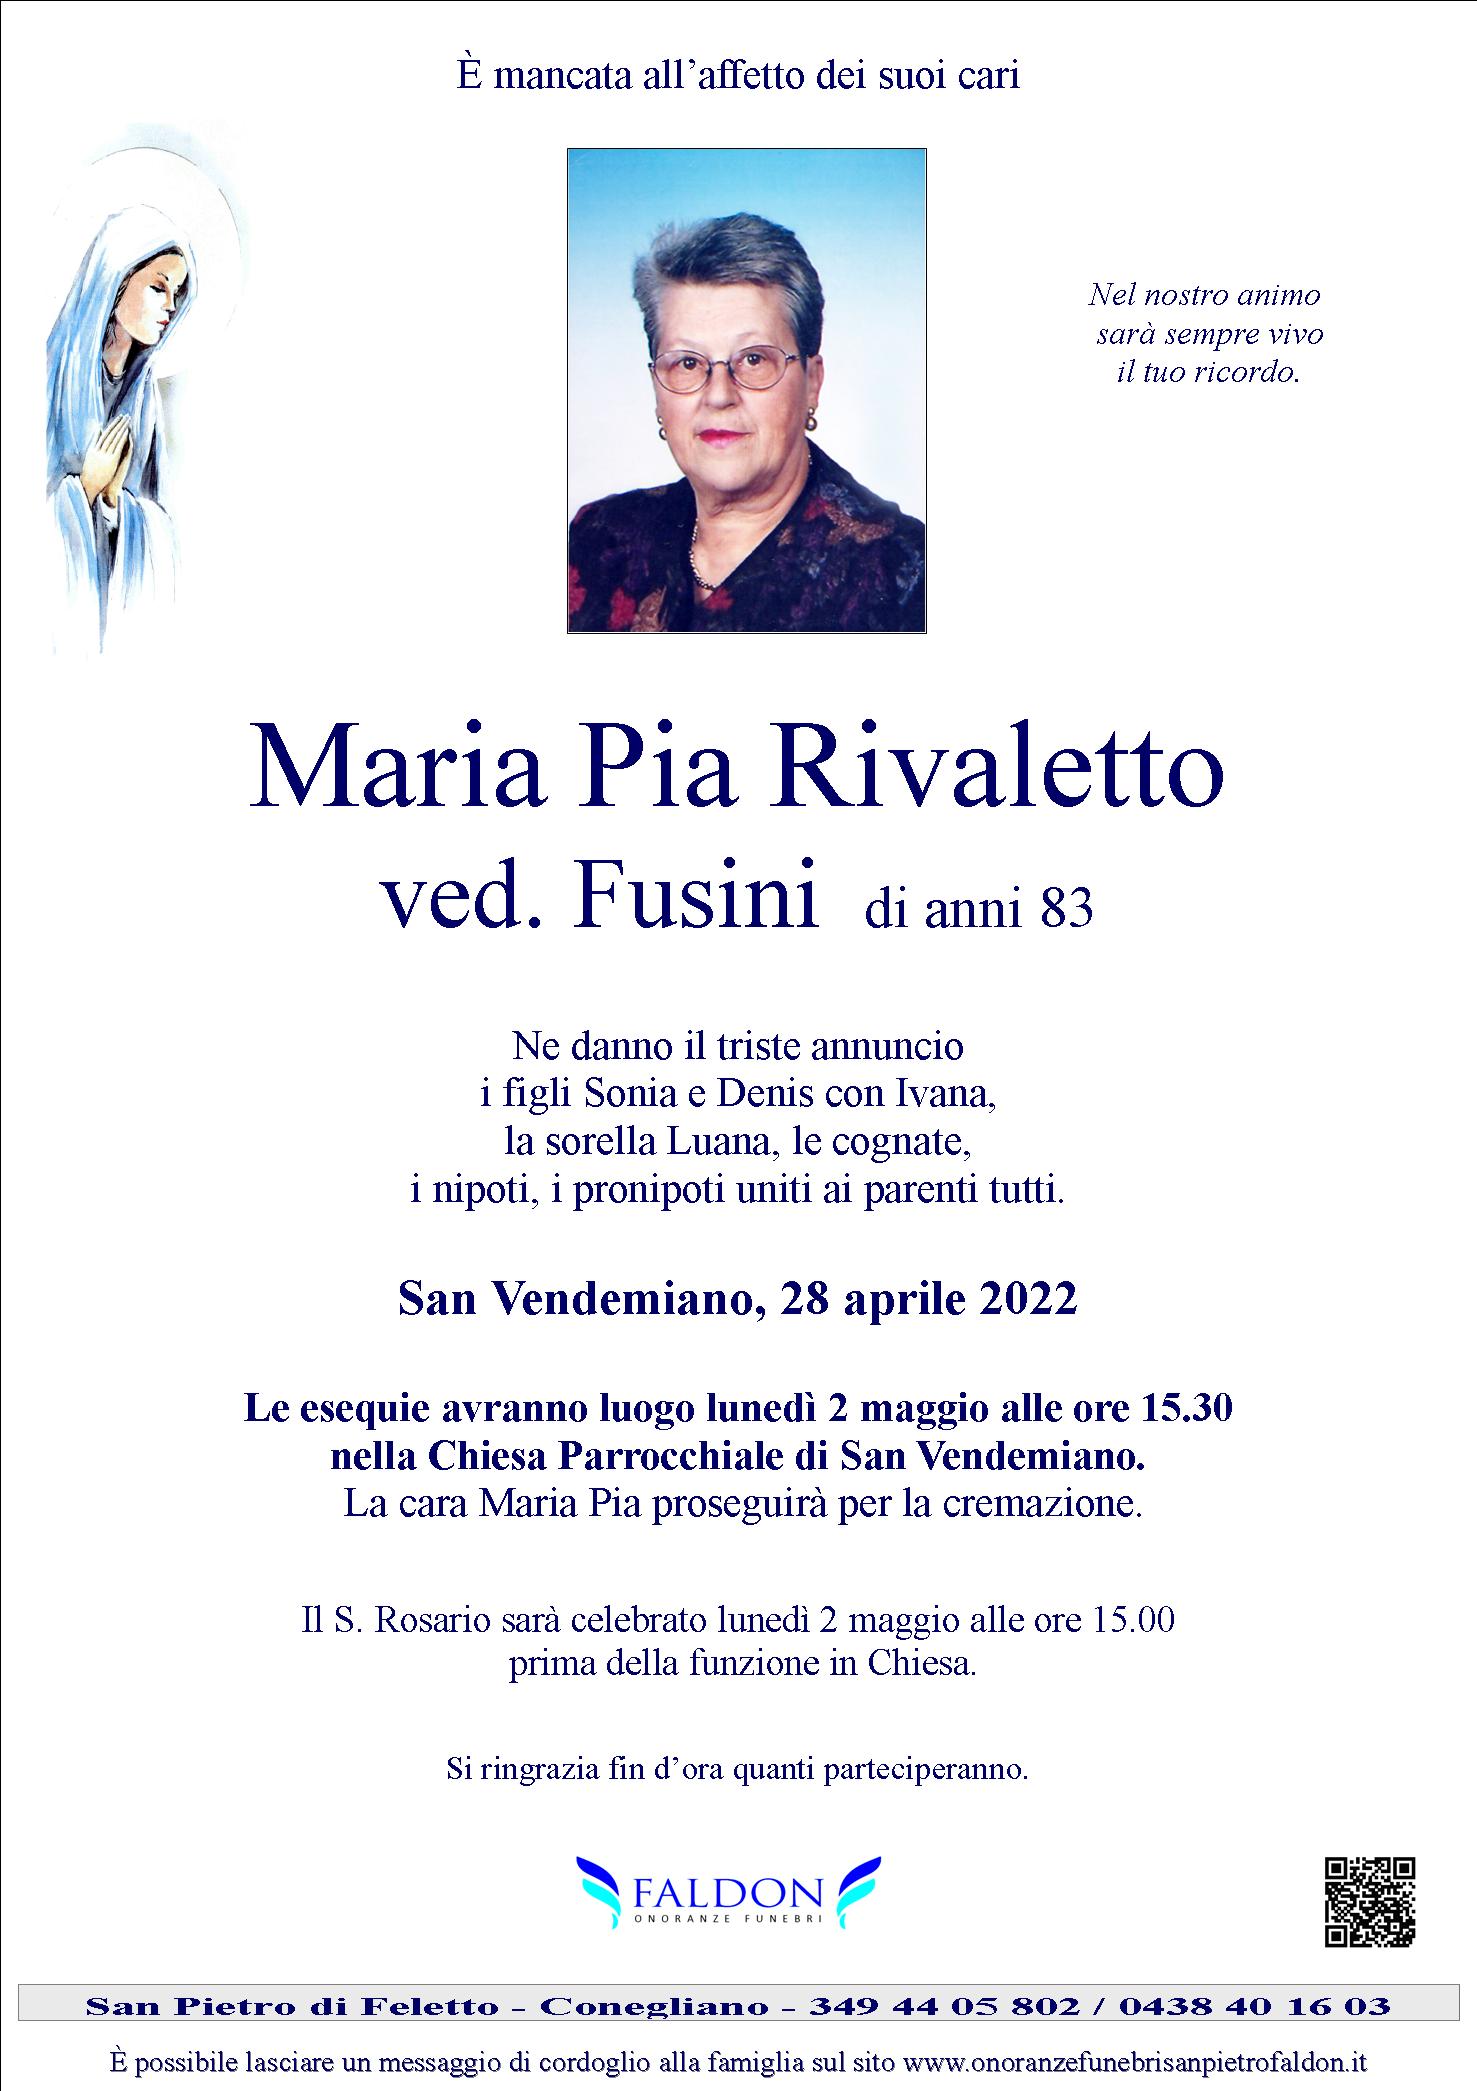 Maria Pia Rivaletto